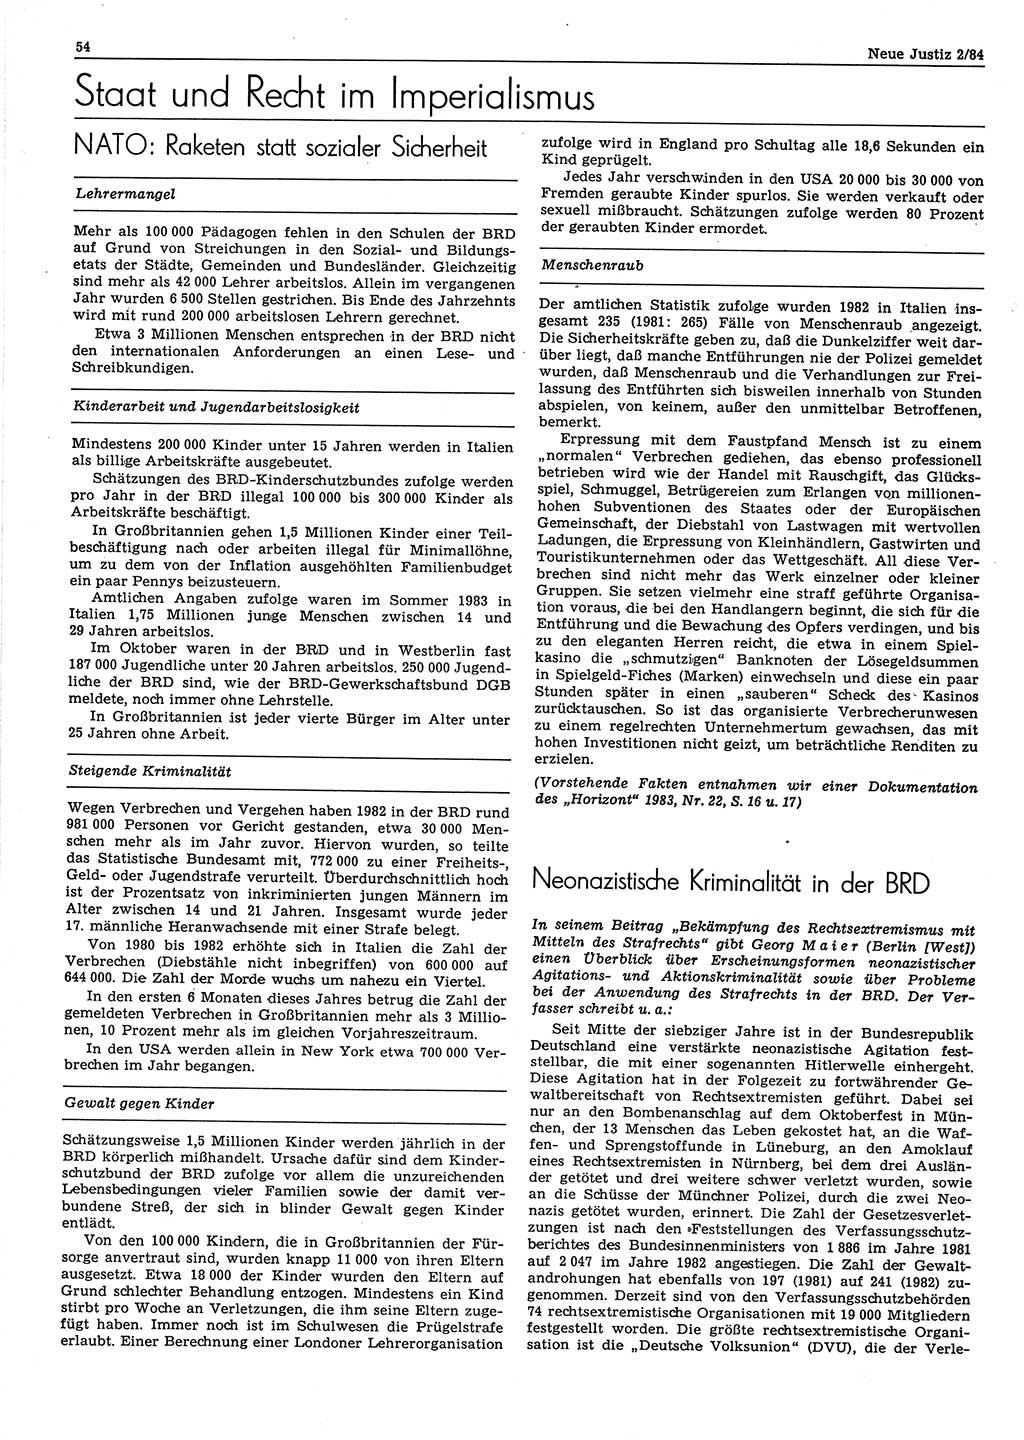 Neue Justiz (NJ), Zeitschrift für sozialistisches Recht und Gesetzlichkeit [Deutsche Demokratische Republik (DDR)], 38. Jahrgang 1984, Seite 54 (NJ DDR 1984, S. 54)